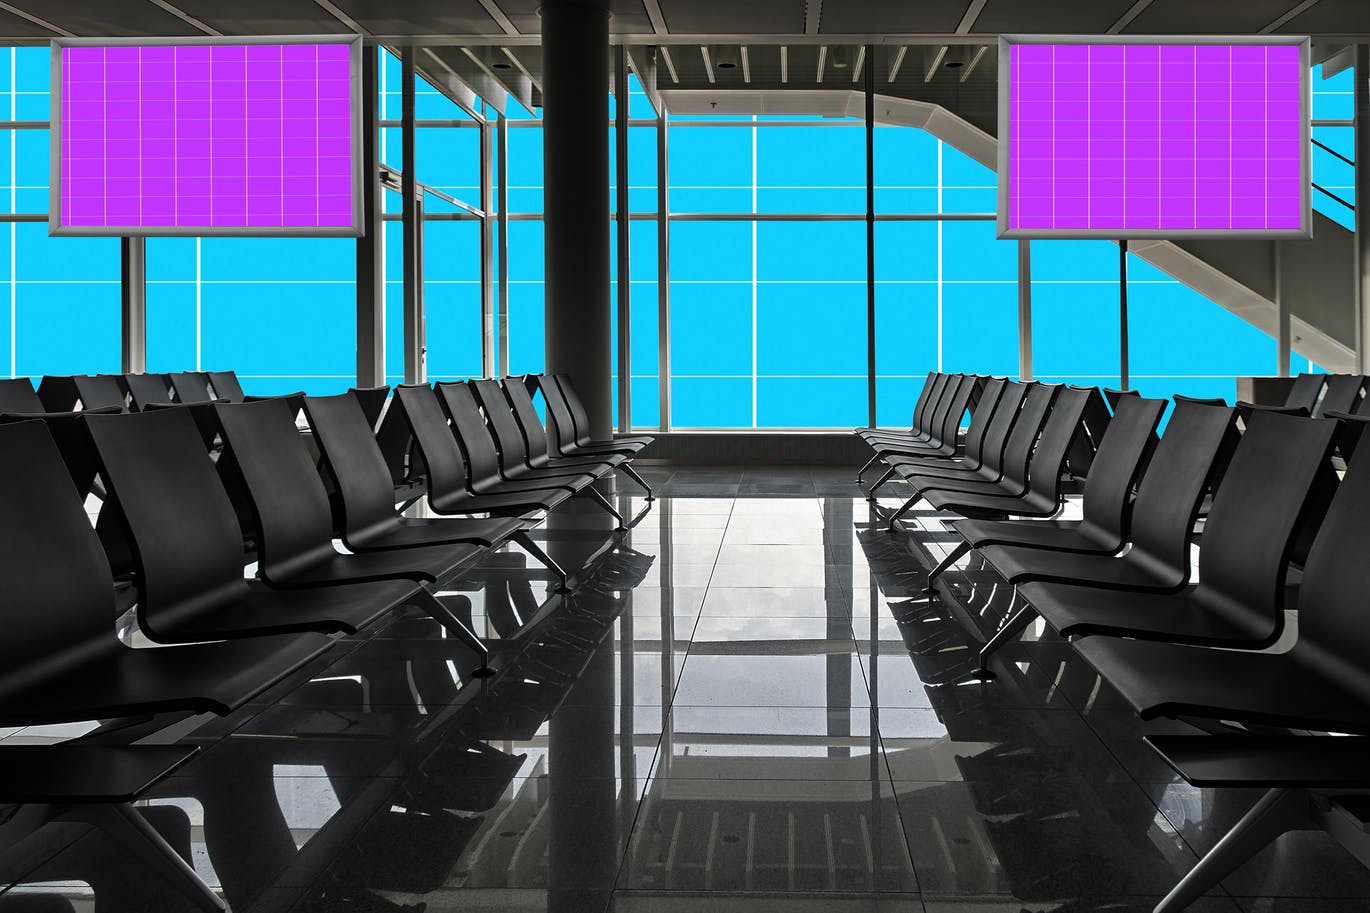 机场航站楼电视屏幕广告设计效果图样机第一素材精选v01 Airport_Terminal-01插图